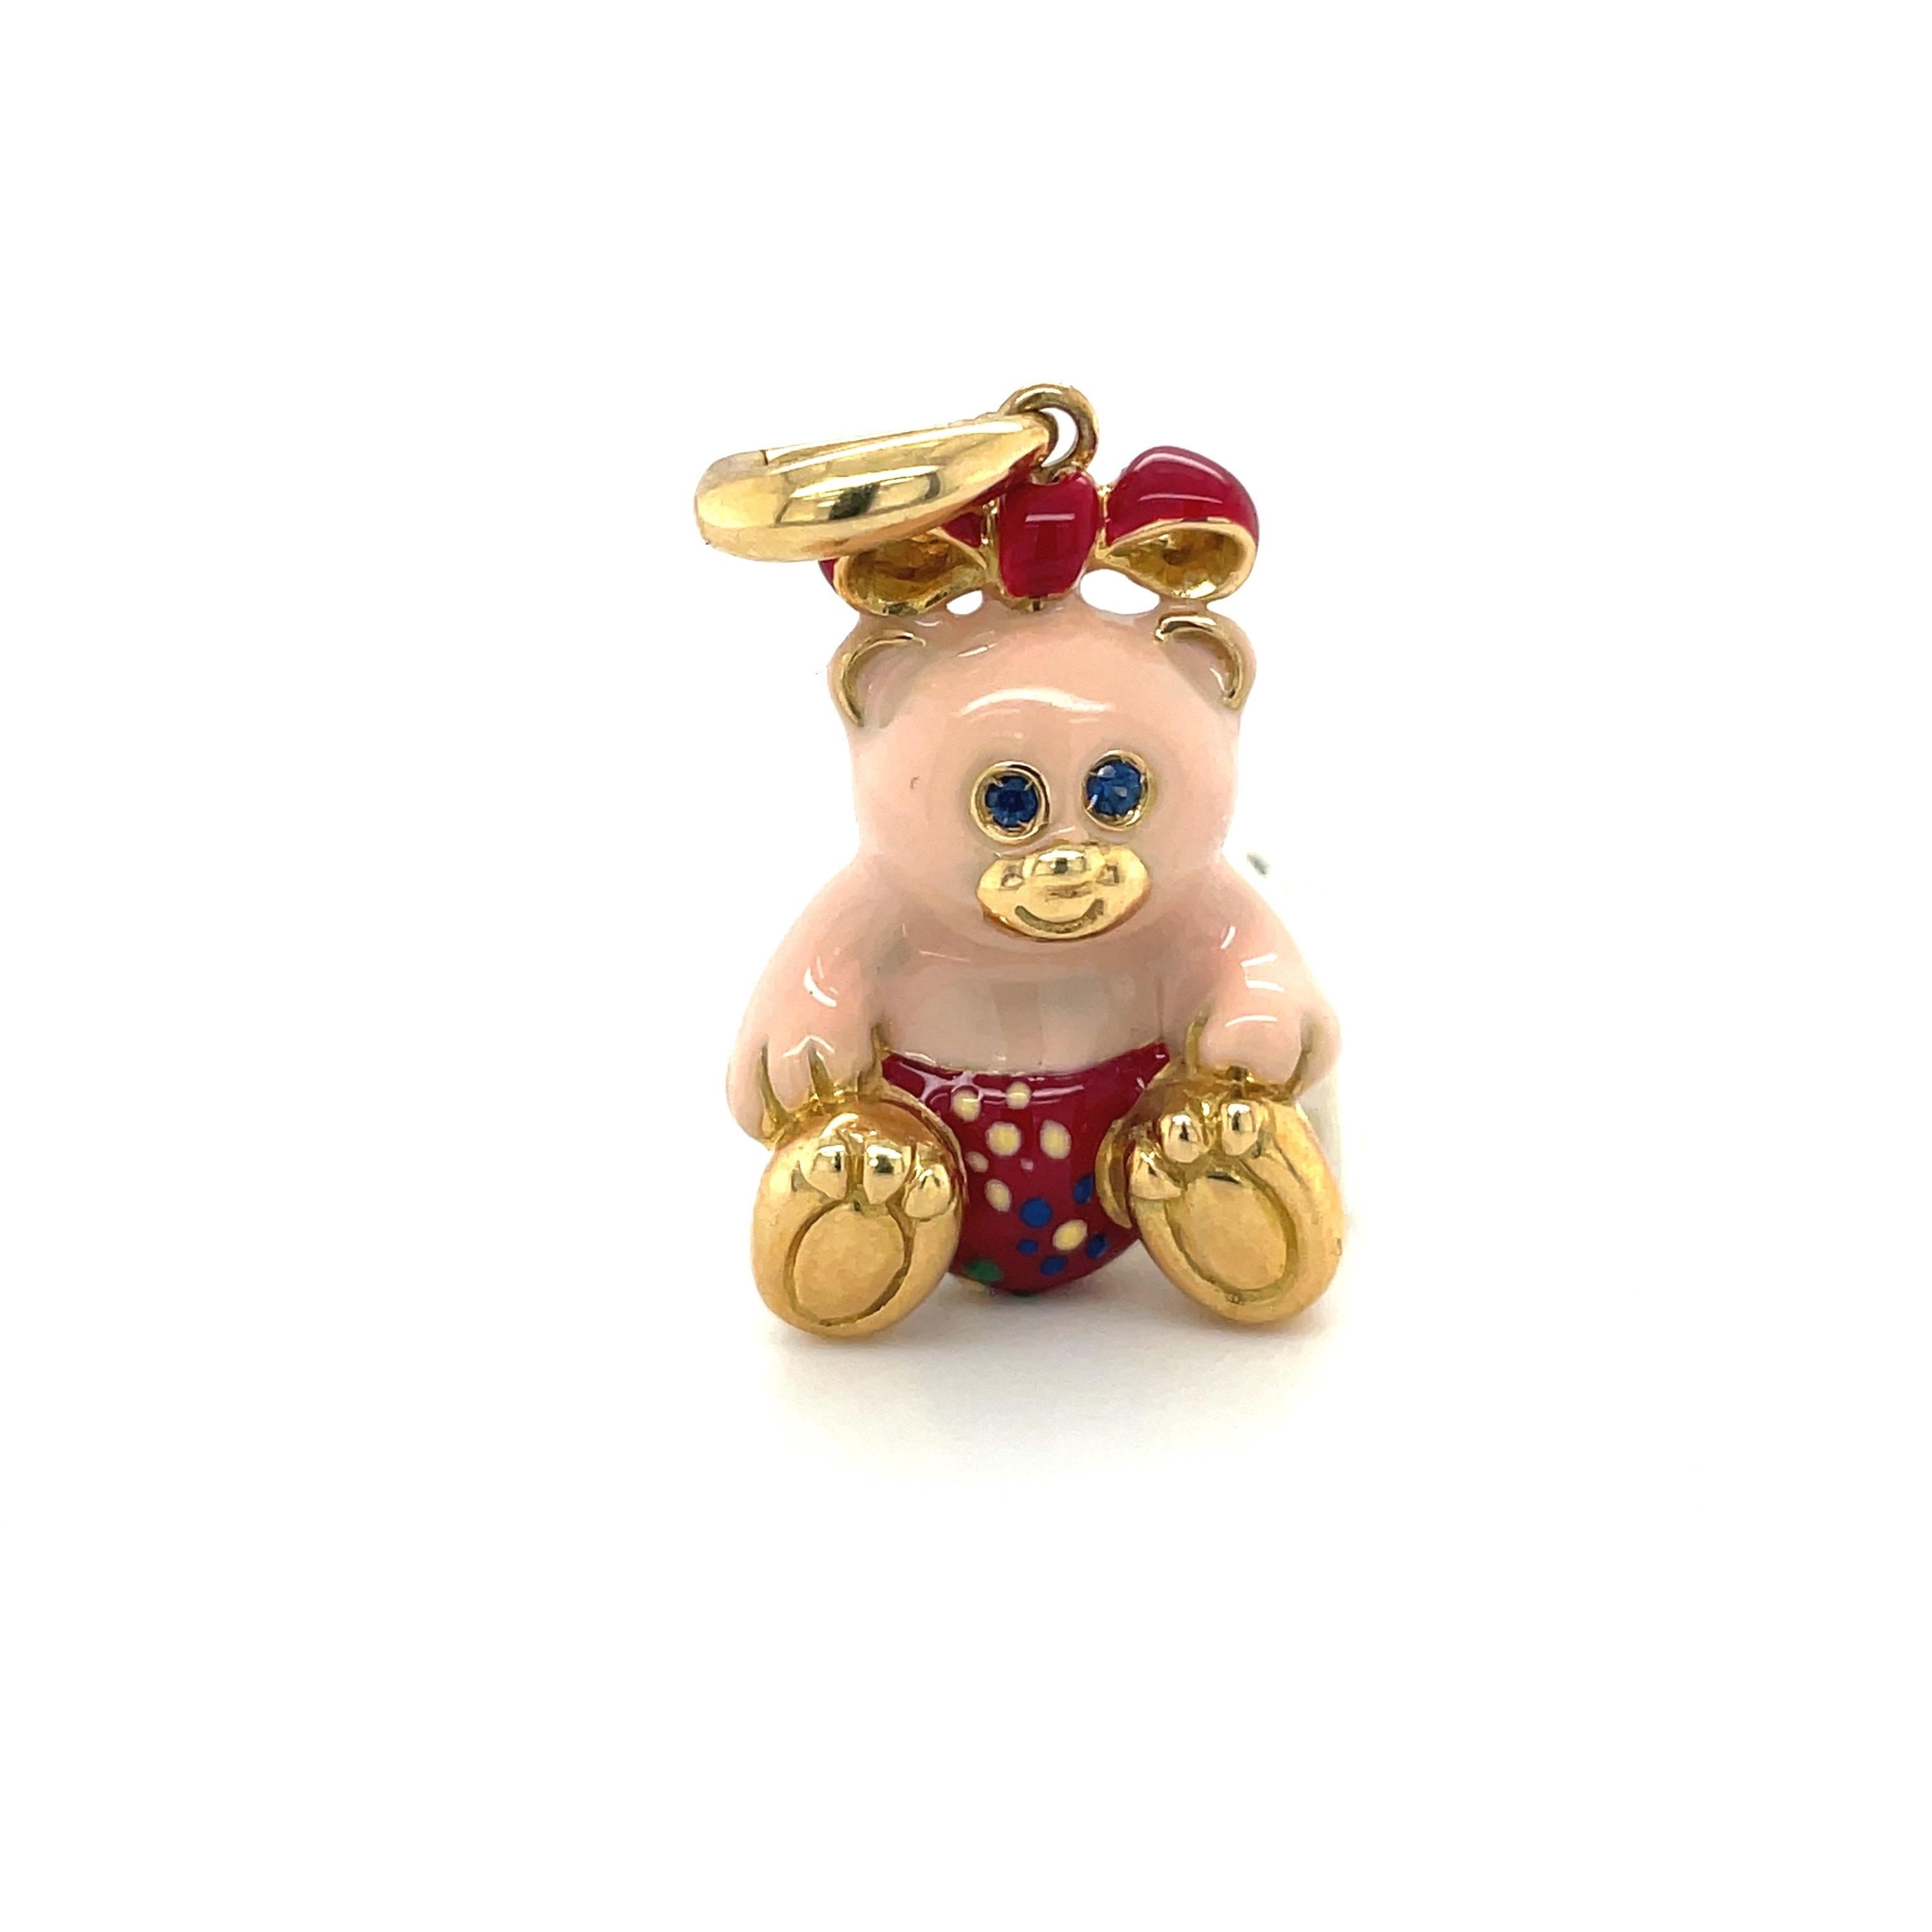 Nur der süßeste....Teddybär-Charme, der exklusiv für Cellini von Ambrosi aus Italien hergestellt wird.

Dieser Teddybär-Charm aus 18 Karat Gelbgold ist mit rosa Emaille für den Körper gefertigt. Ihr Outfit ist rot mit gelben, blauen und grünen